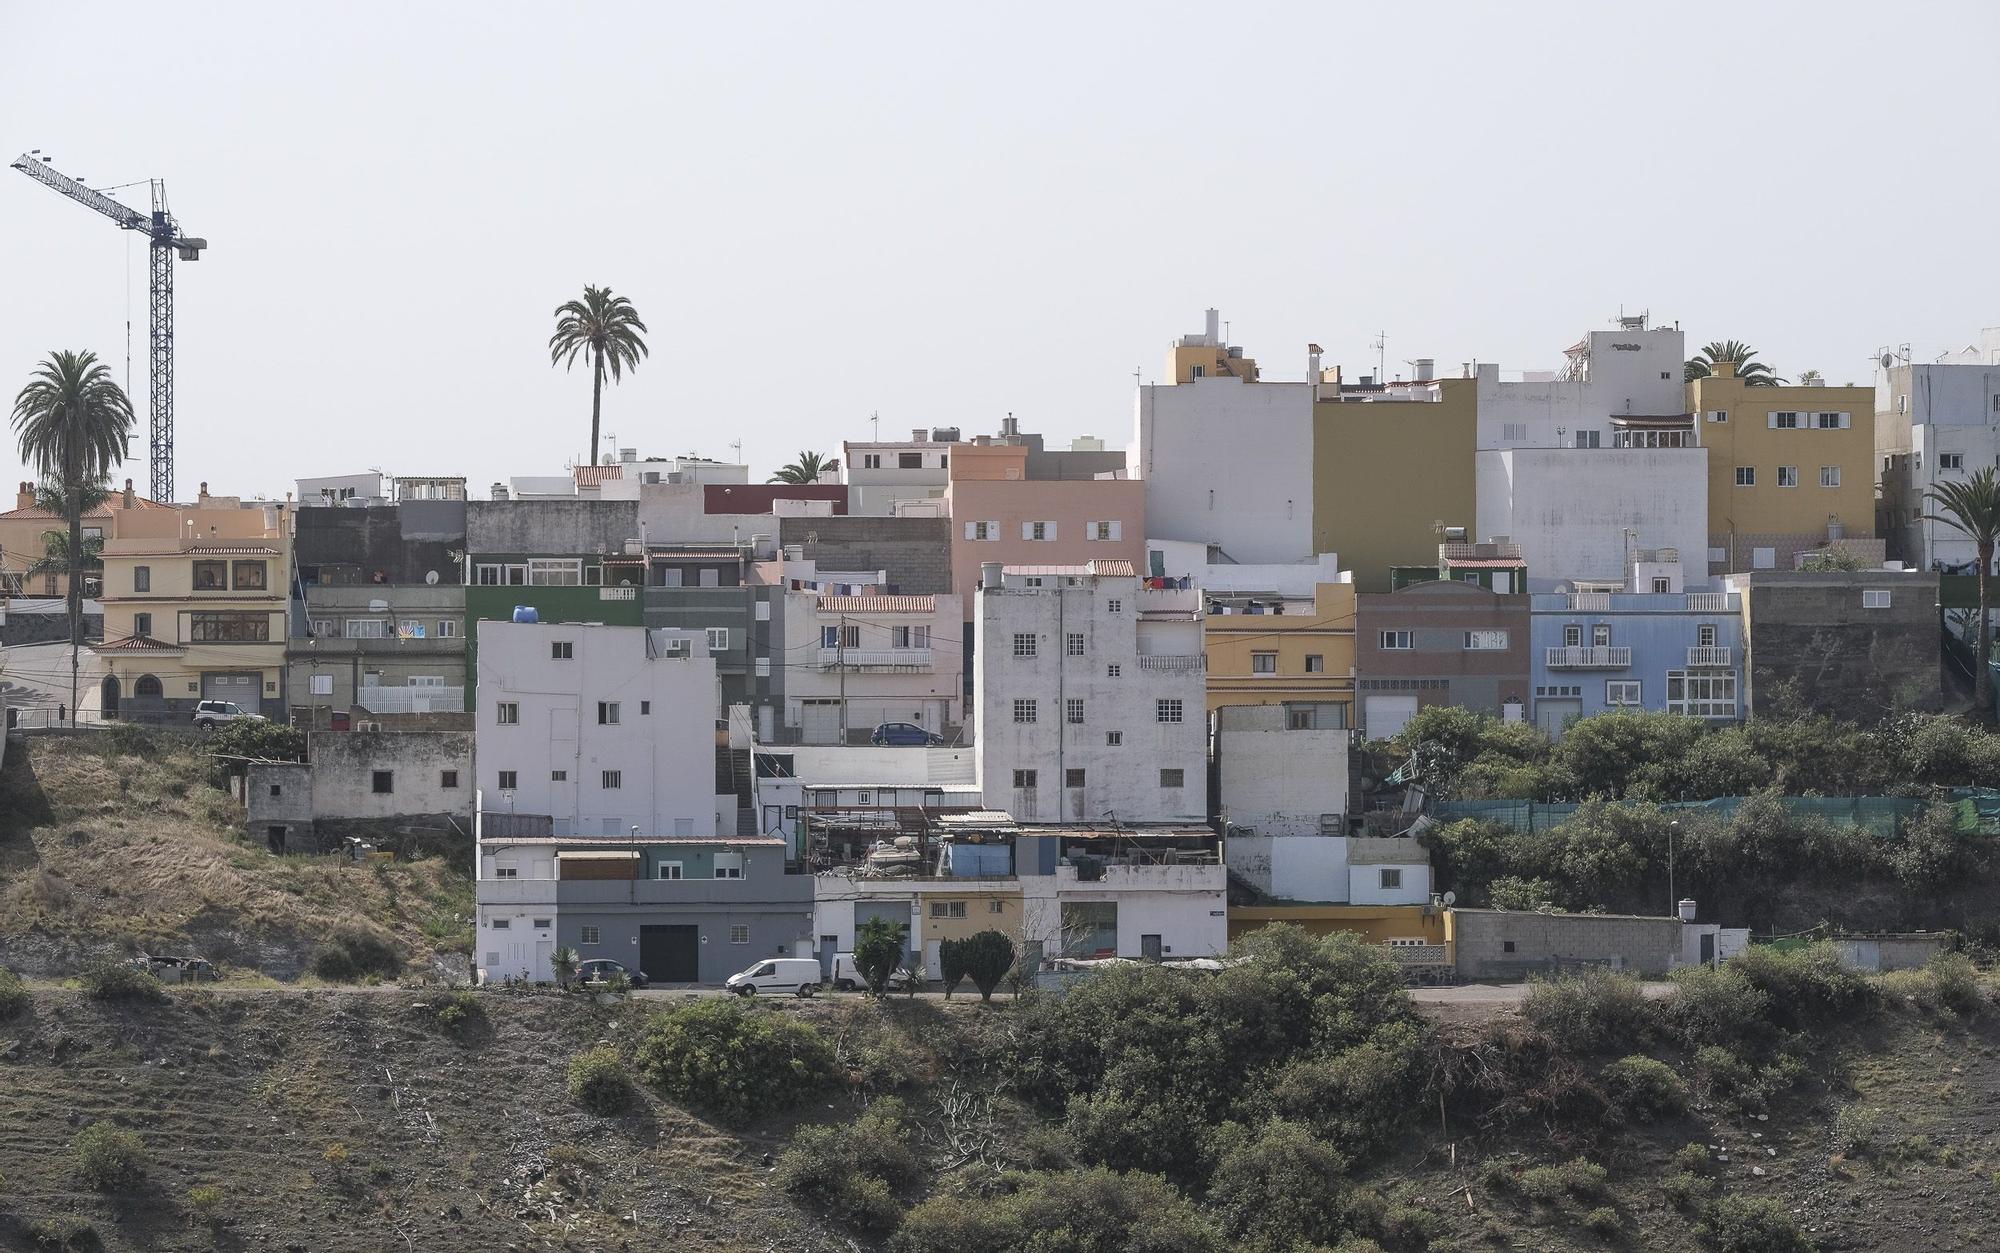 Falta de limpieza en las calles del barrio de El Fondillo en Las Palmas de Gran Canaria